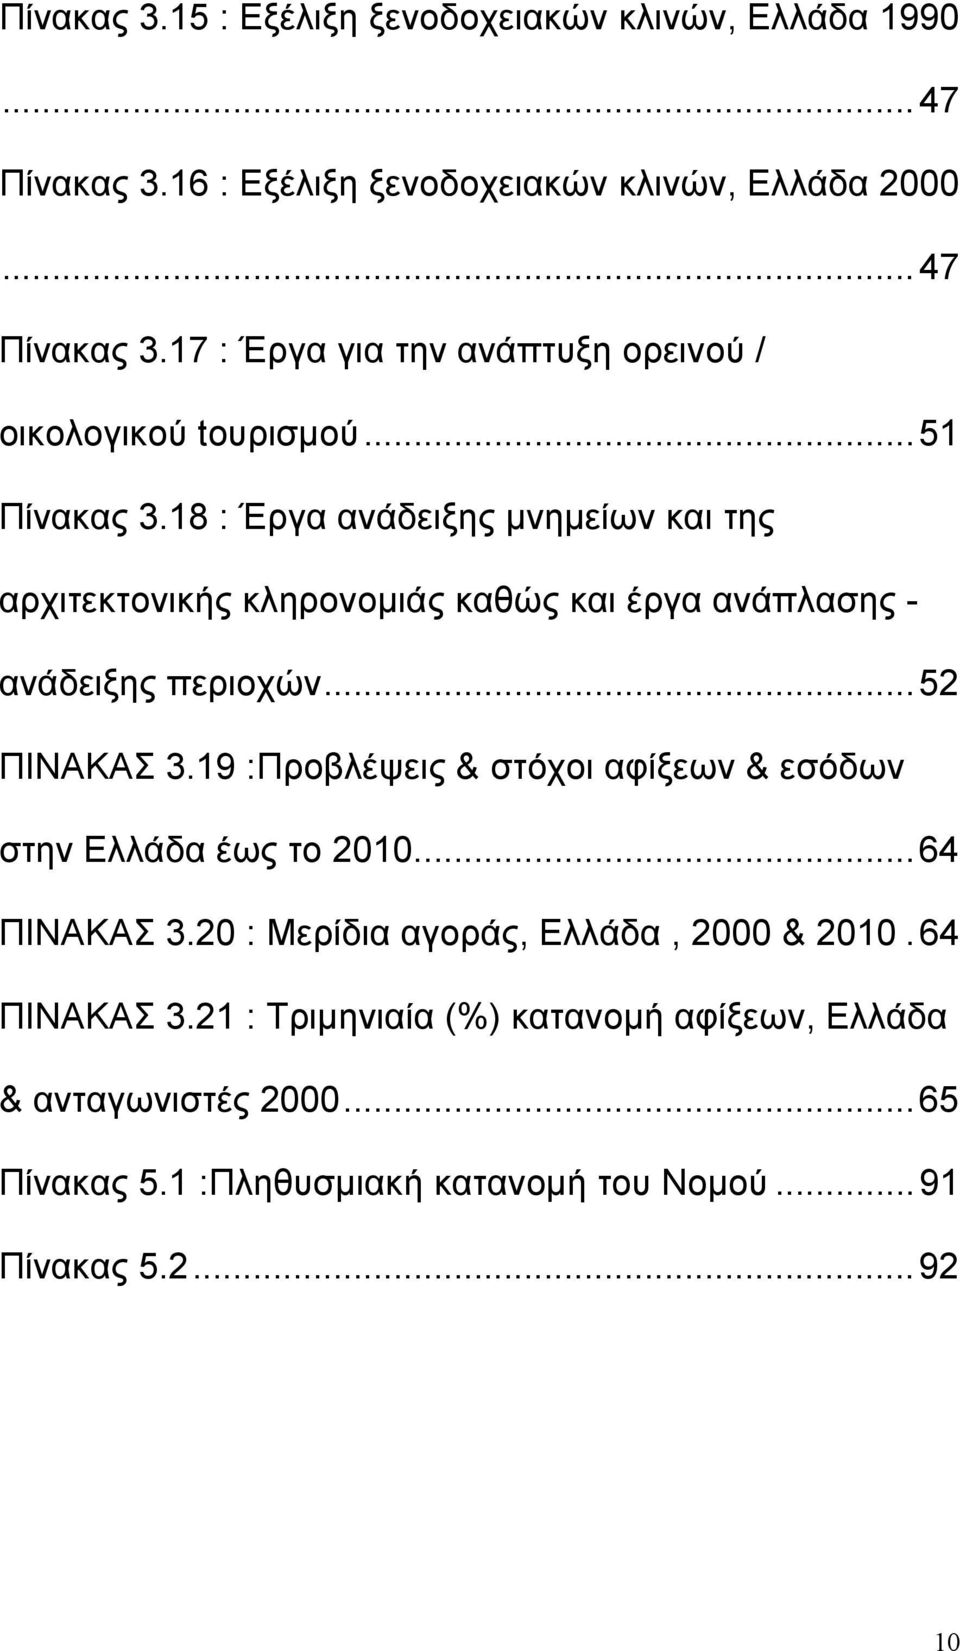 19 :Προβλέψεις & στόχοι αφίξεων & εσόδων στην Ελλάδα έως το 2010...64 ΠΙΝΑΚΑΣ 3.20 : Μερίδια αγοράς, Ελλάδα, 2000 & 2010.64 ΠΙΝΑΚΑΣ 3.21 : Τριμηνιαία (%) κατανομή αφίξεων, Ελλάδα & ανταγωνιστές 2000.